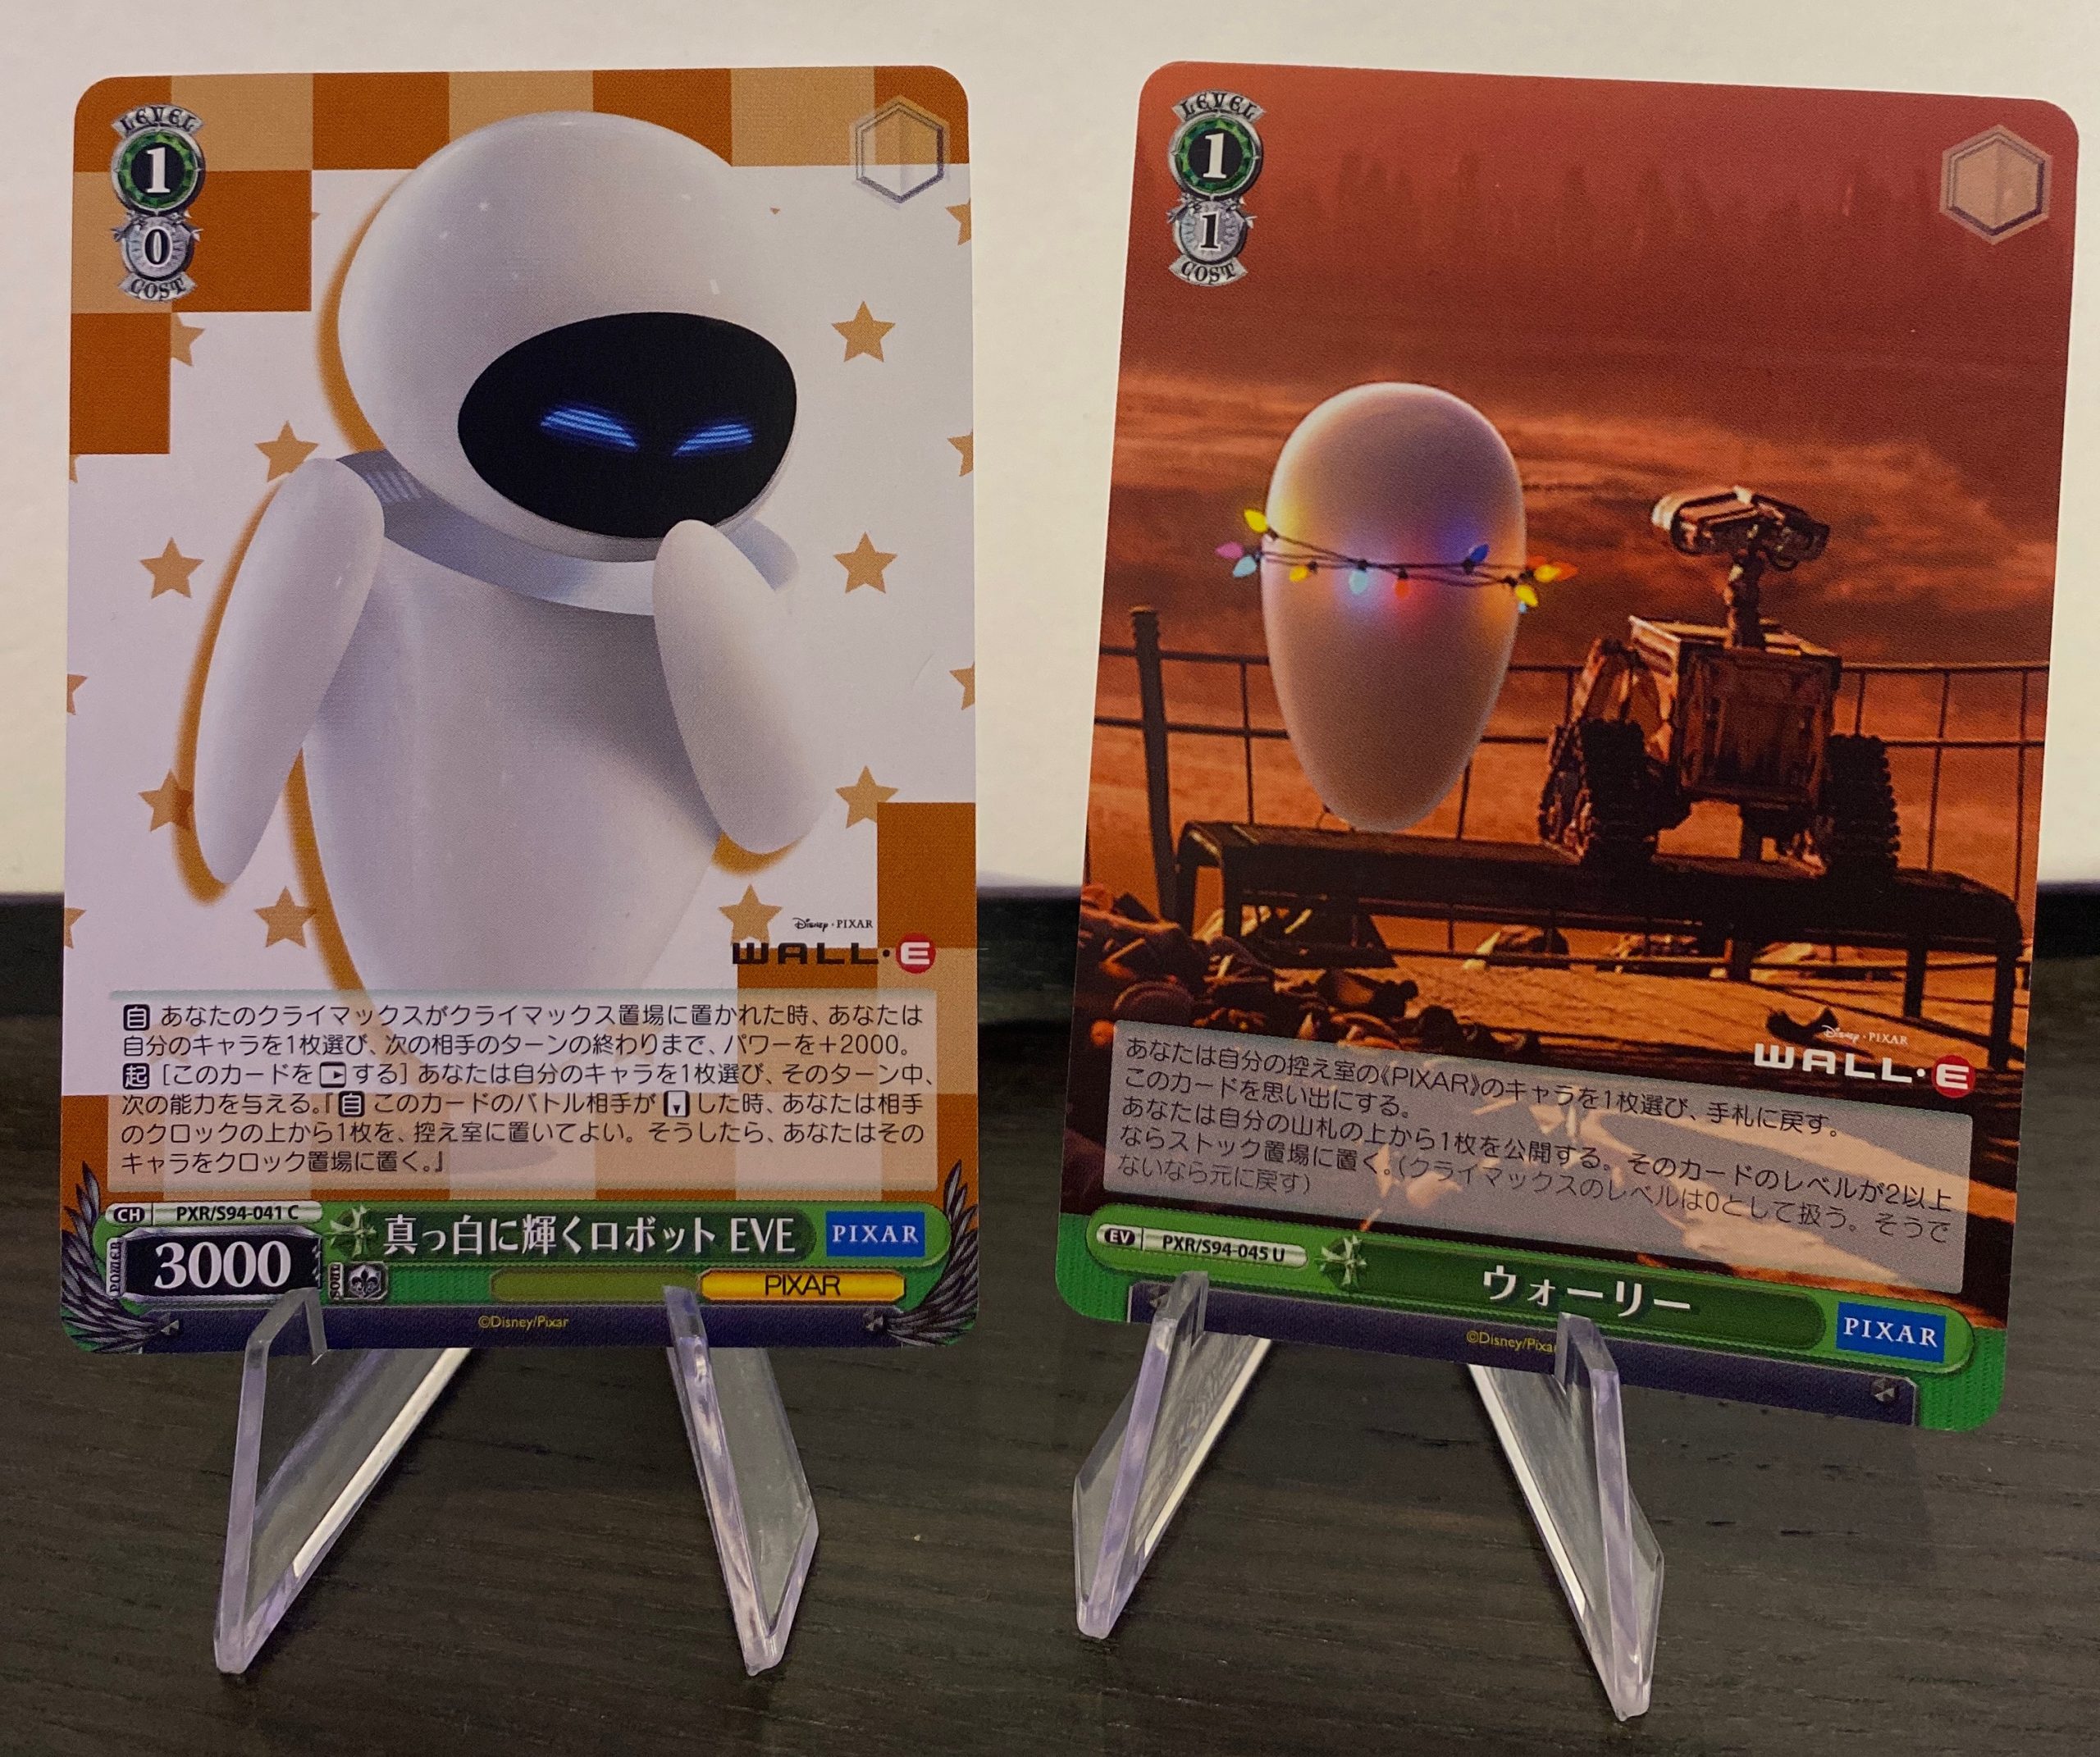 WALL E & EVE Foil disney cards